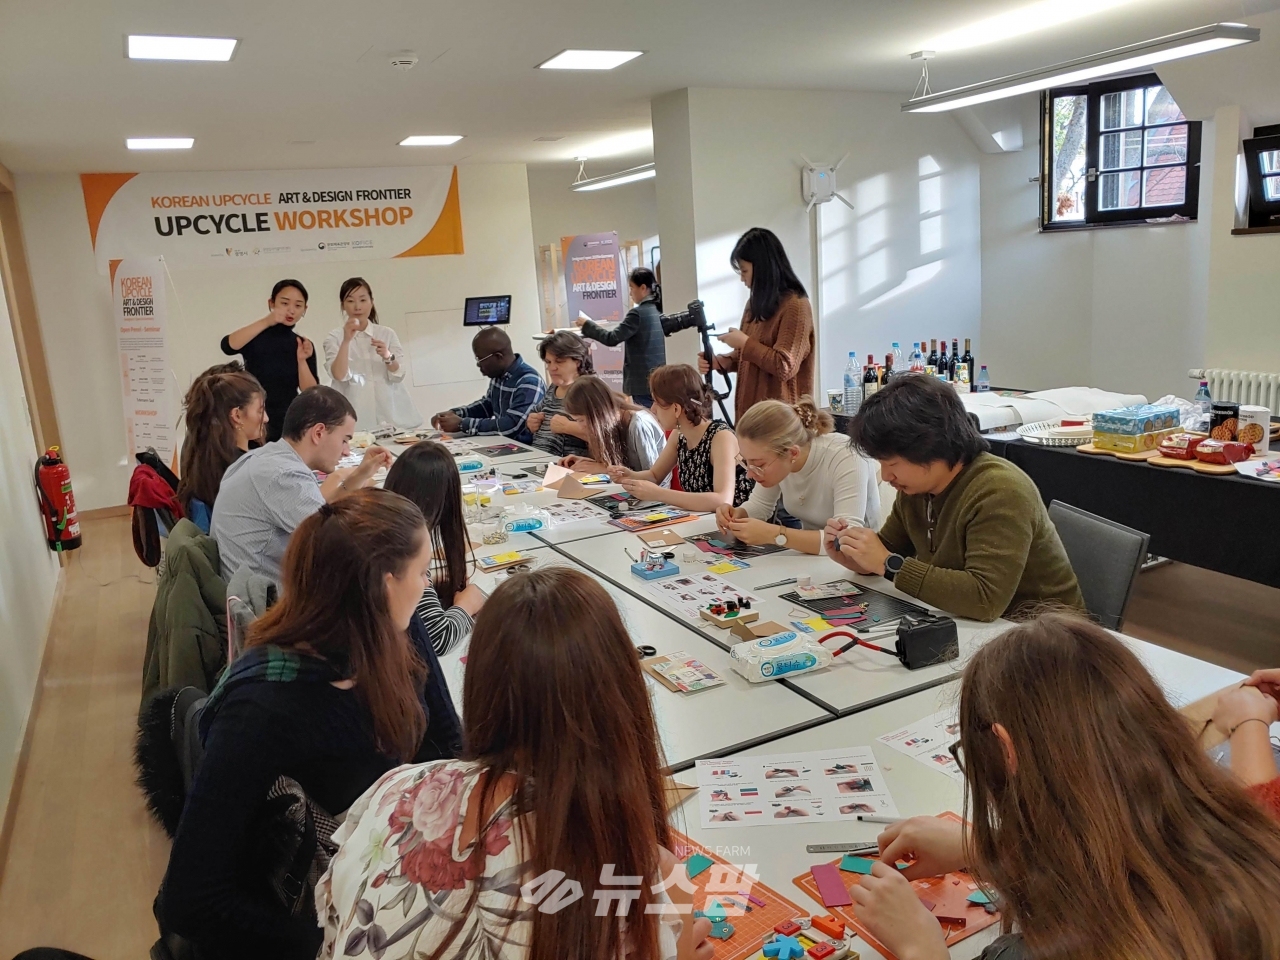 @광명시 광명업사이클아트센터는 10월 25일부터 27일까지 독일 라이프히치에서 열린 독디자이너스 오픈(Designers' Open)에 참가,  ‘KOREAN UPCYCLE ART & DESIGN FRONTIER’展을 성황리에 마쳤다